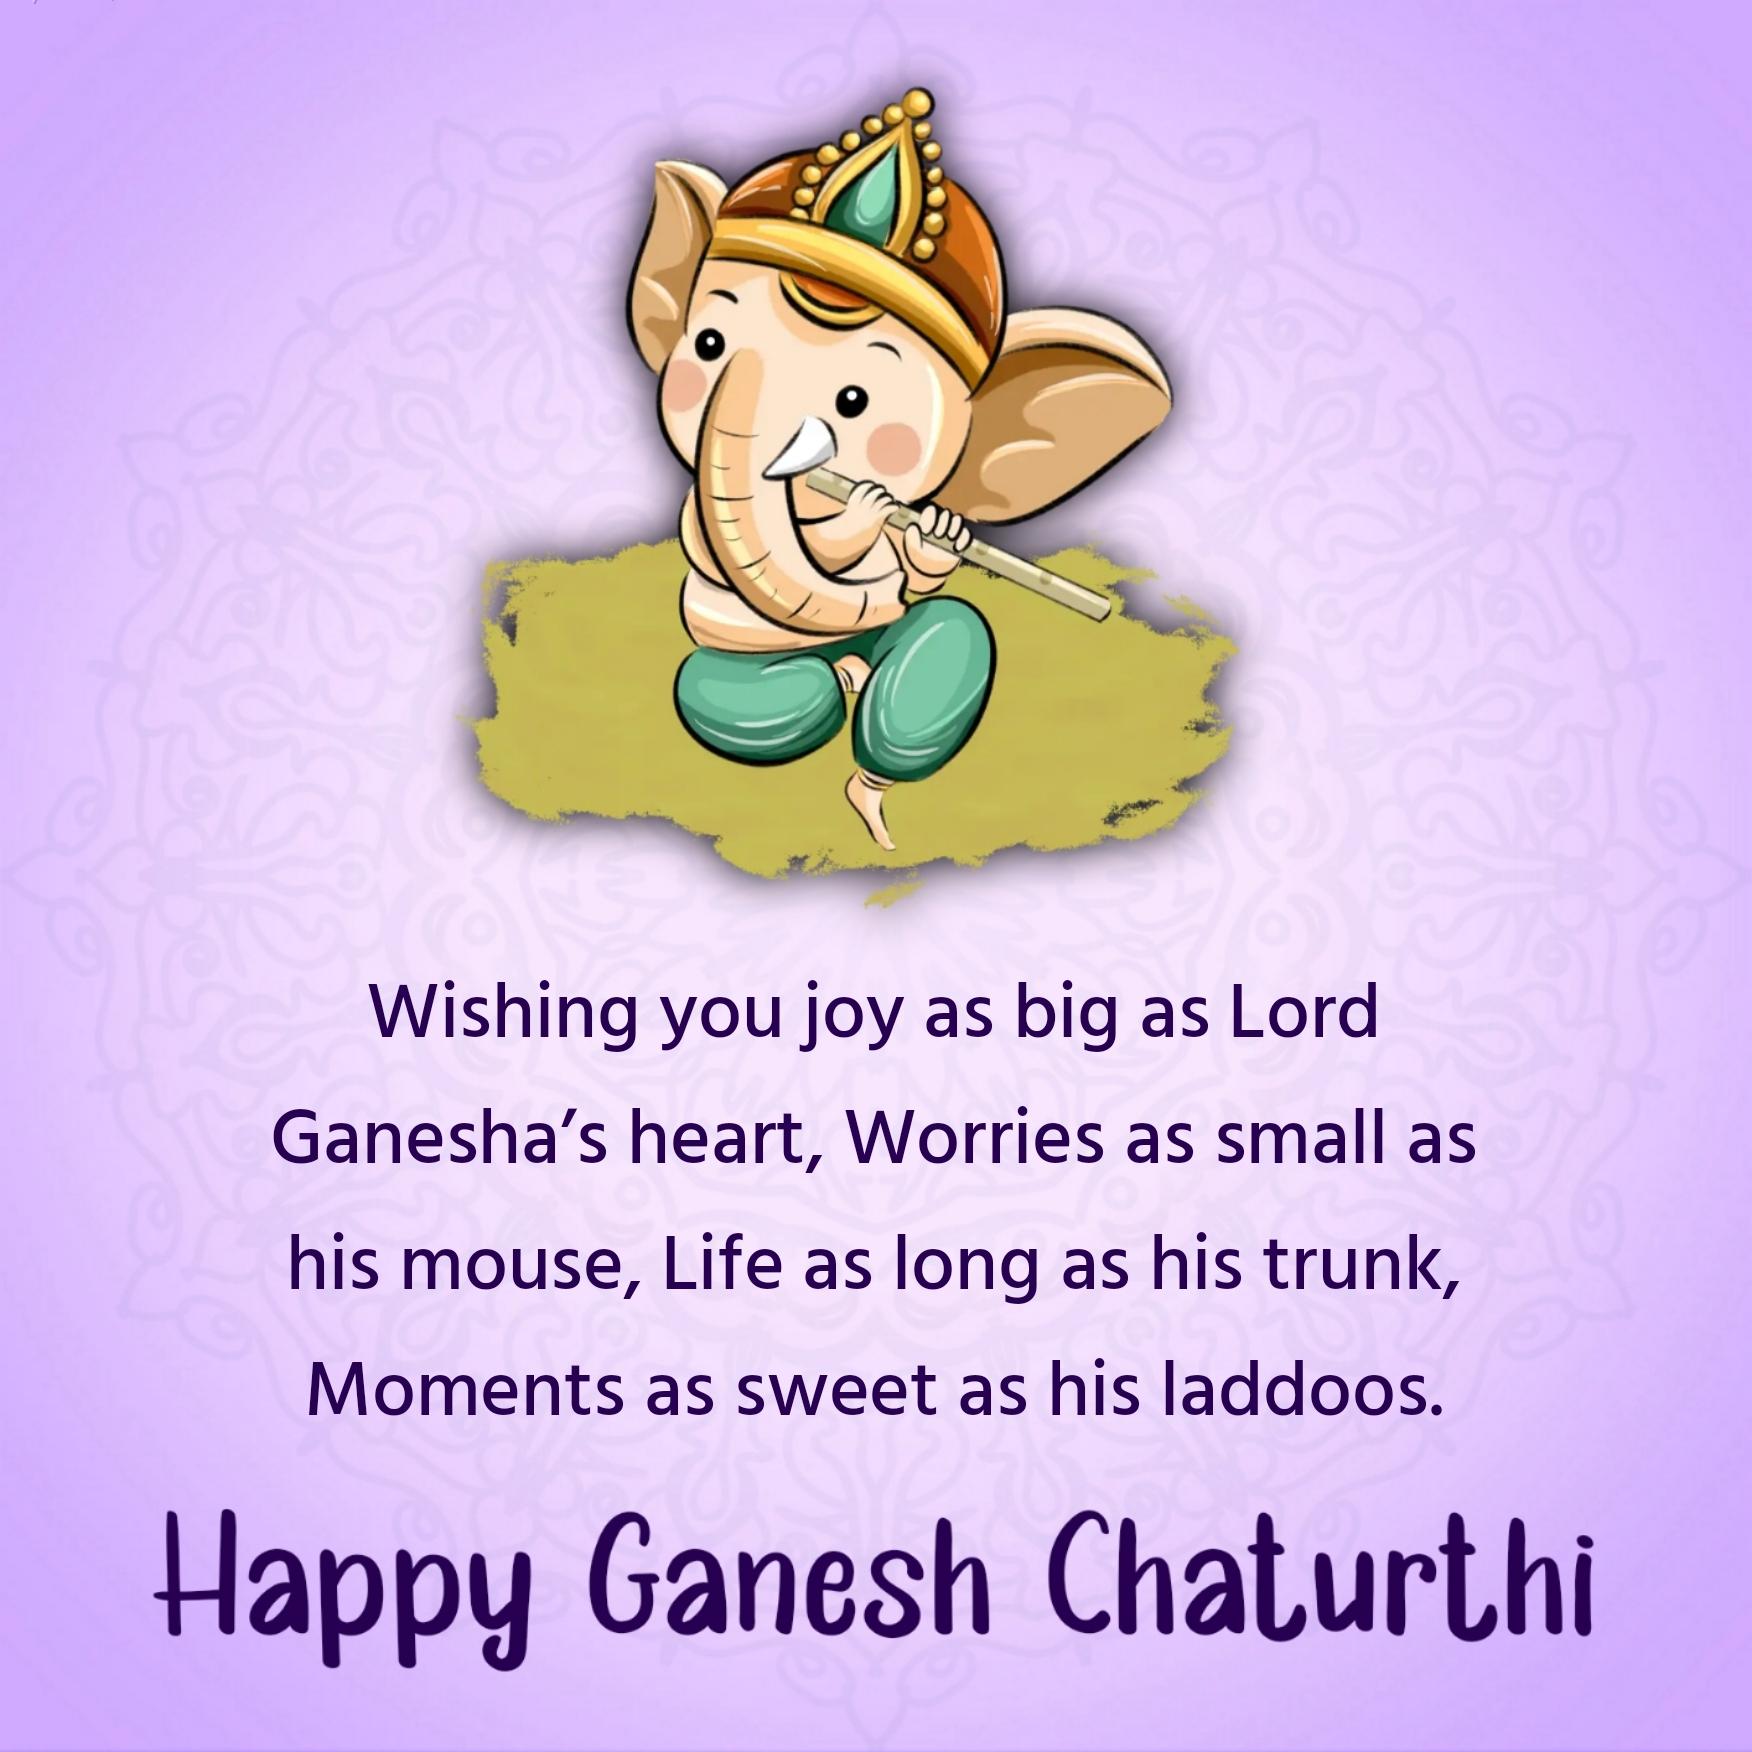 Wishing you joy as big as Lord Ganeshas heart